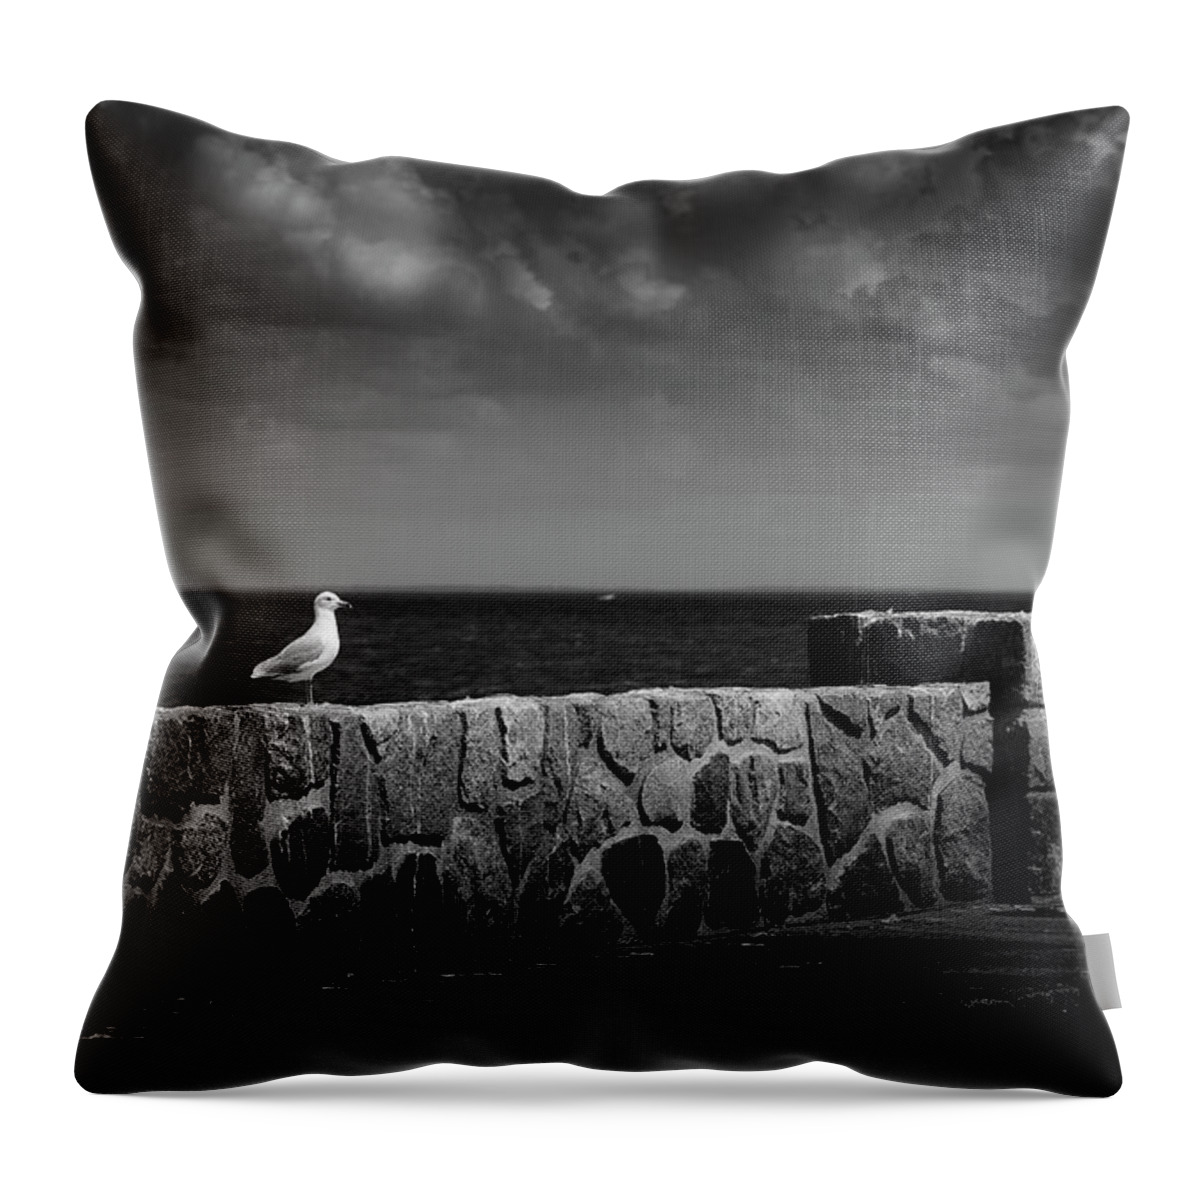 Blumwurks Throw Pillow featuring the photograph The Surveyor by Matthew Blum